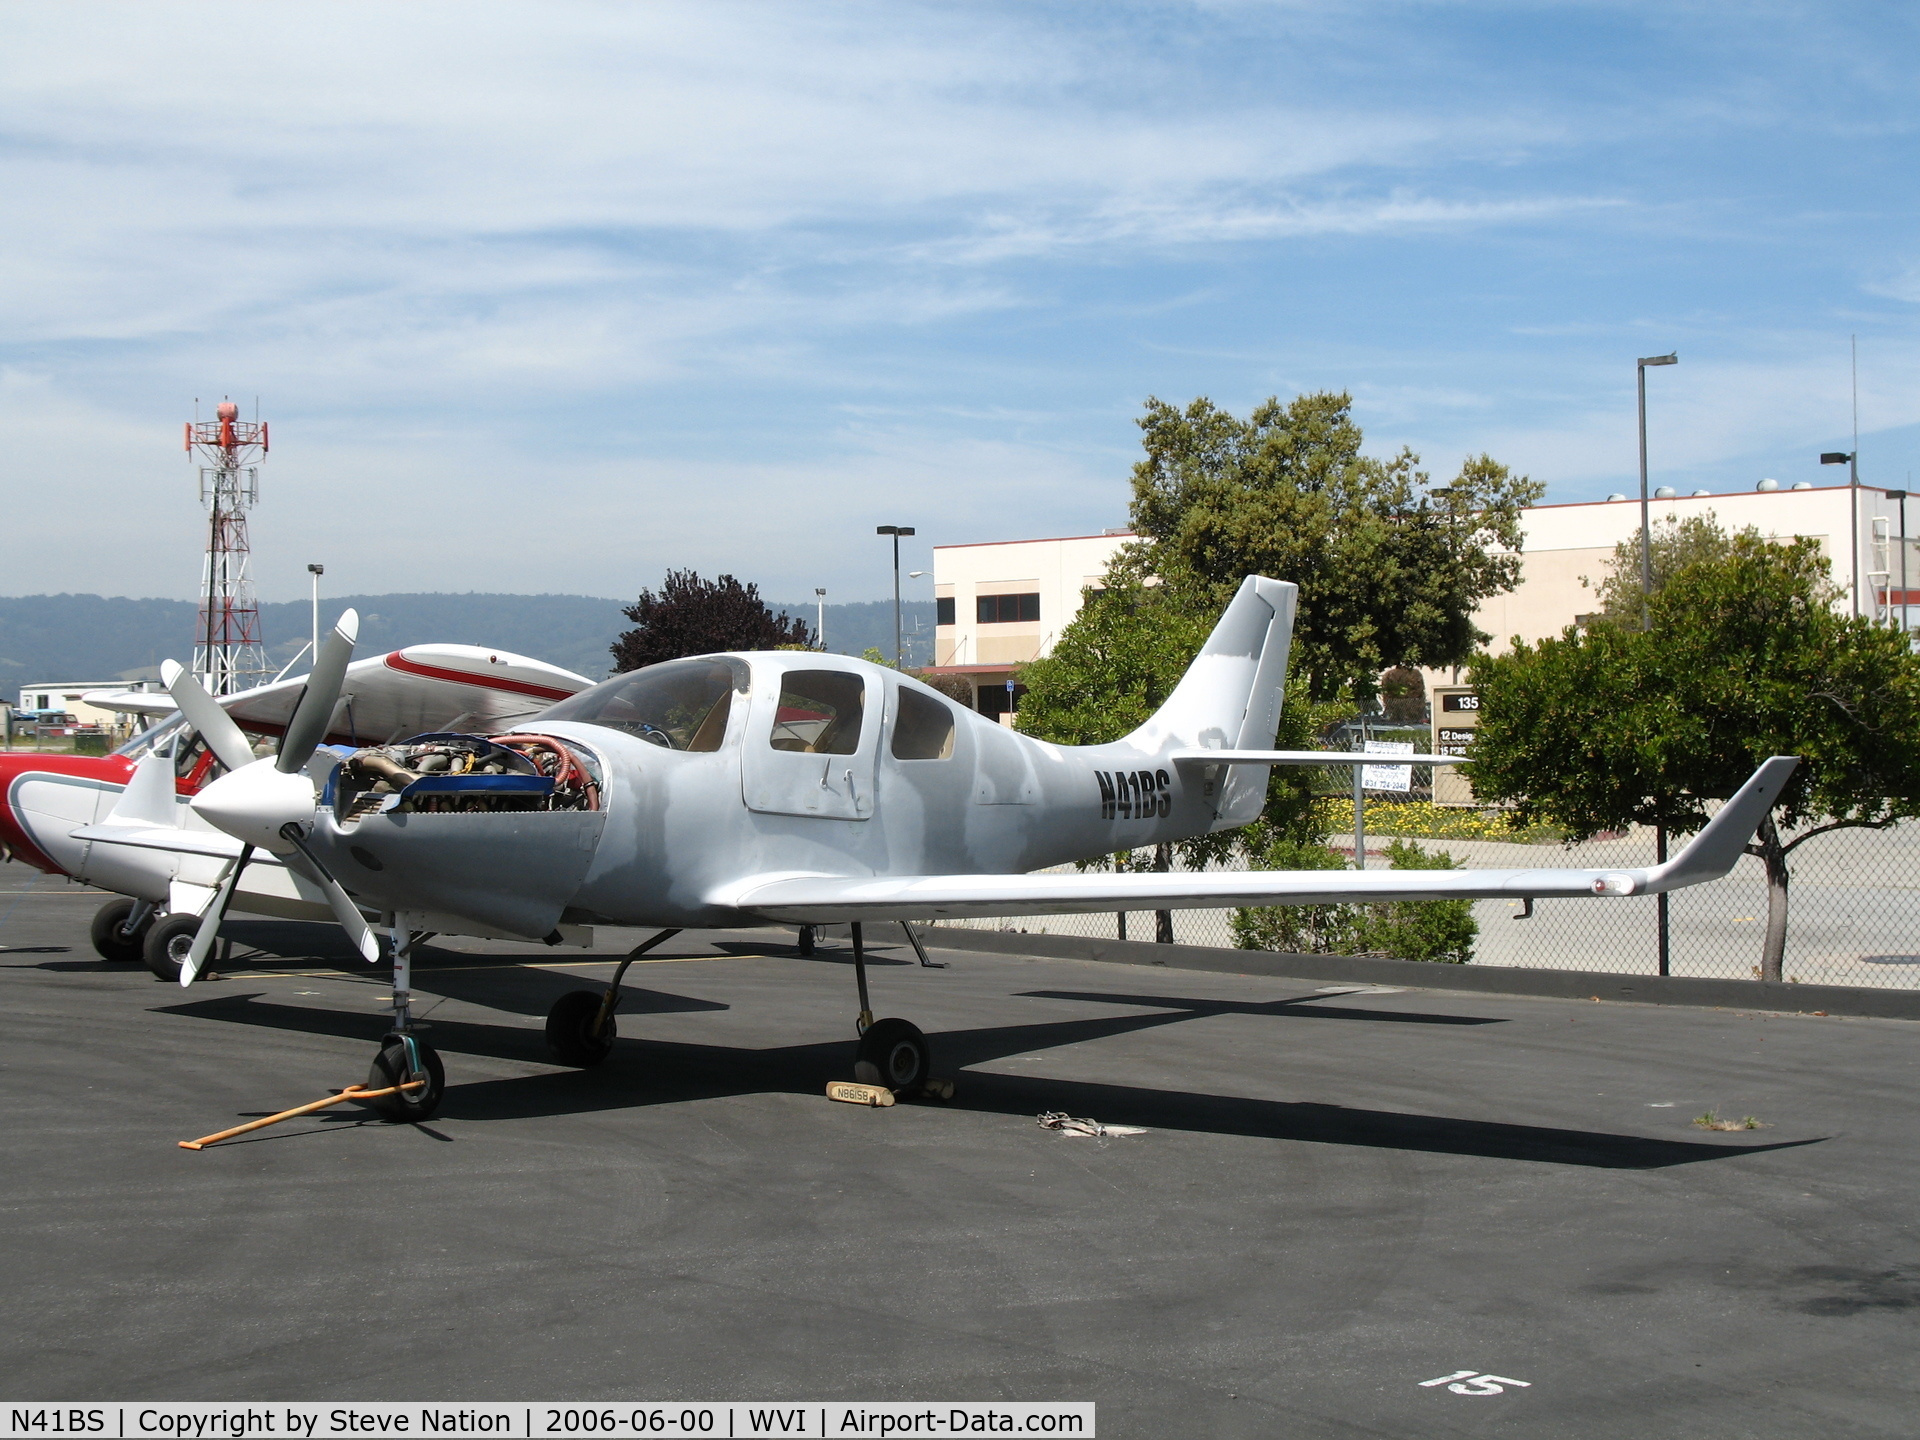 N41BS, 2000 Lancair IV-P C/N LIV-376, 2000 Nielo Aviation LANCAIR IV-P @ Watsonville Municipal Airport, CA